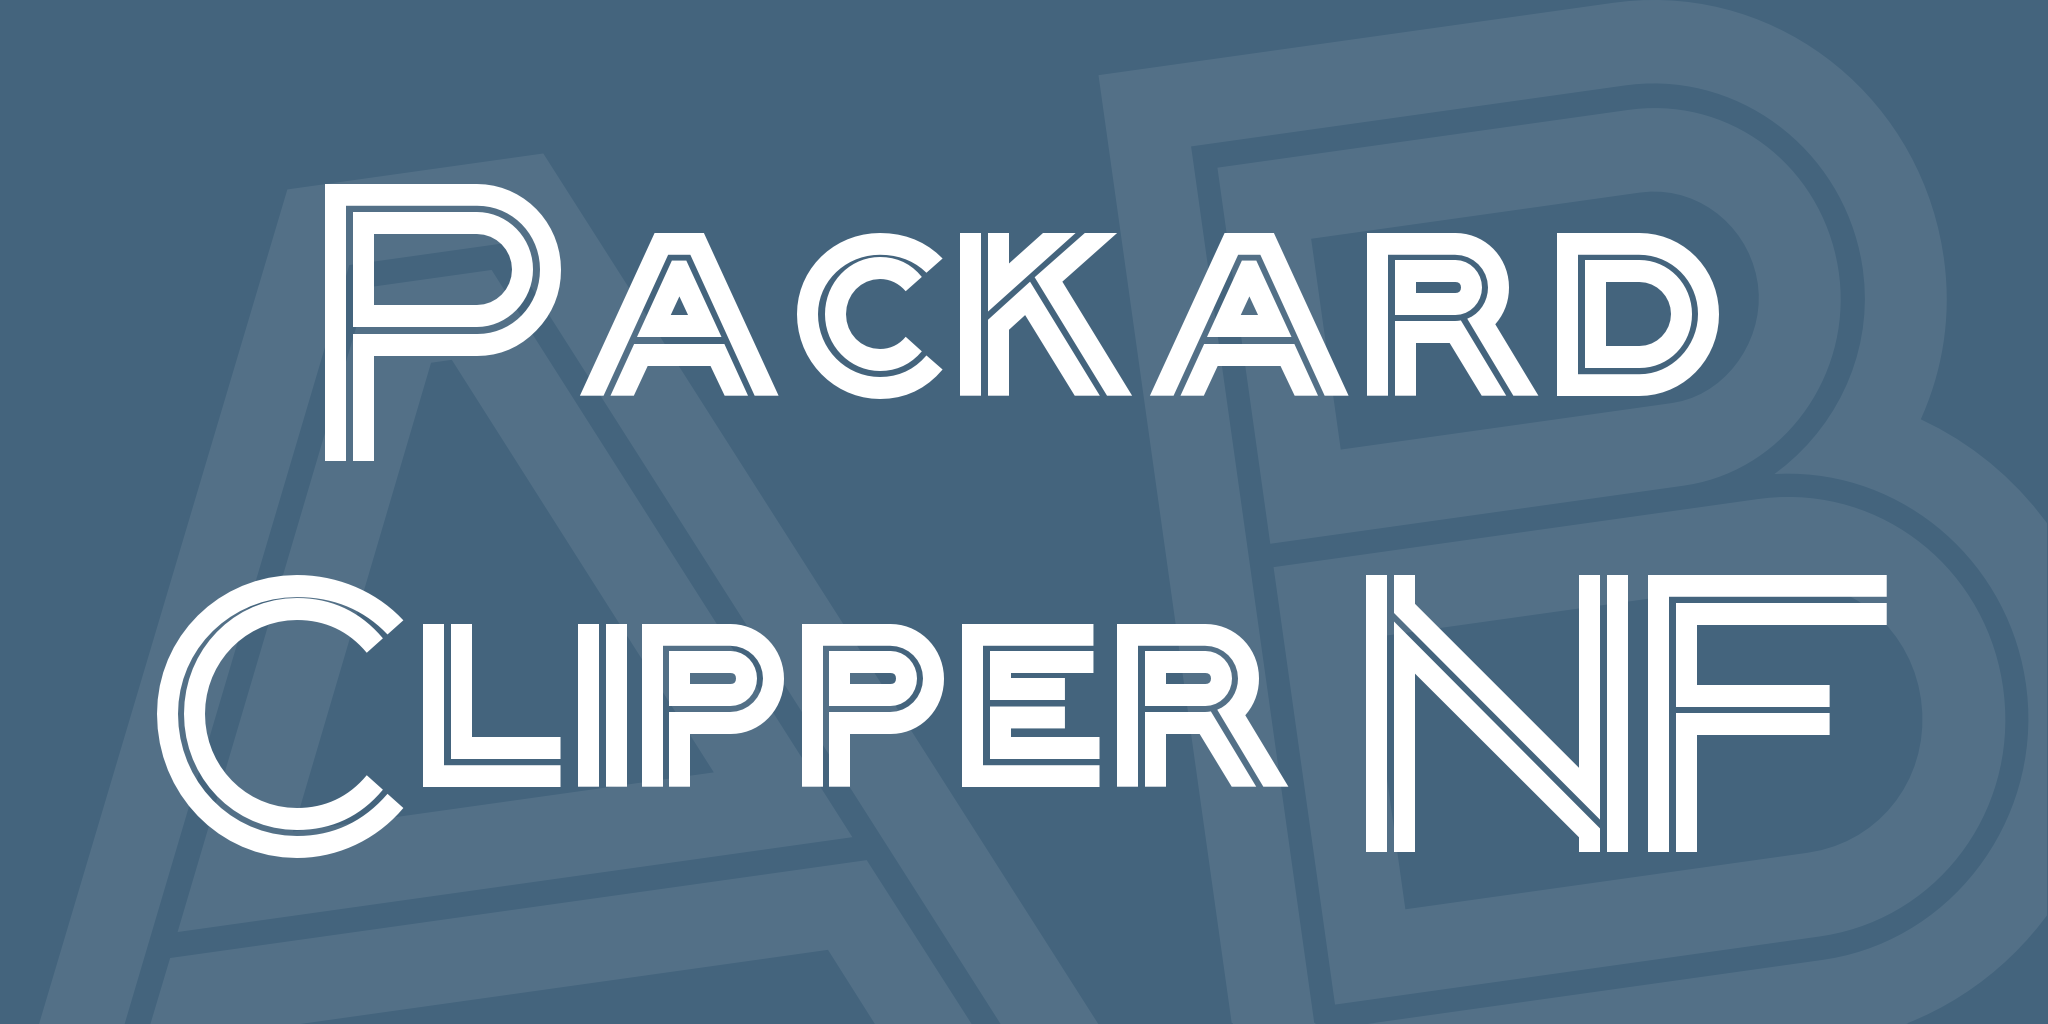 Packard Clipper Nf